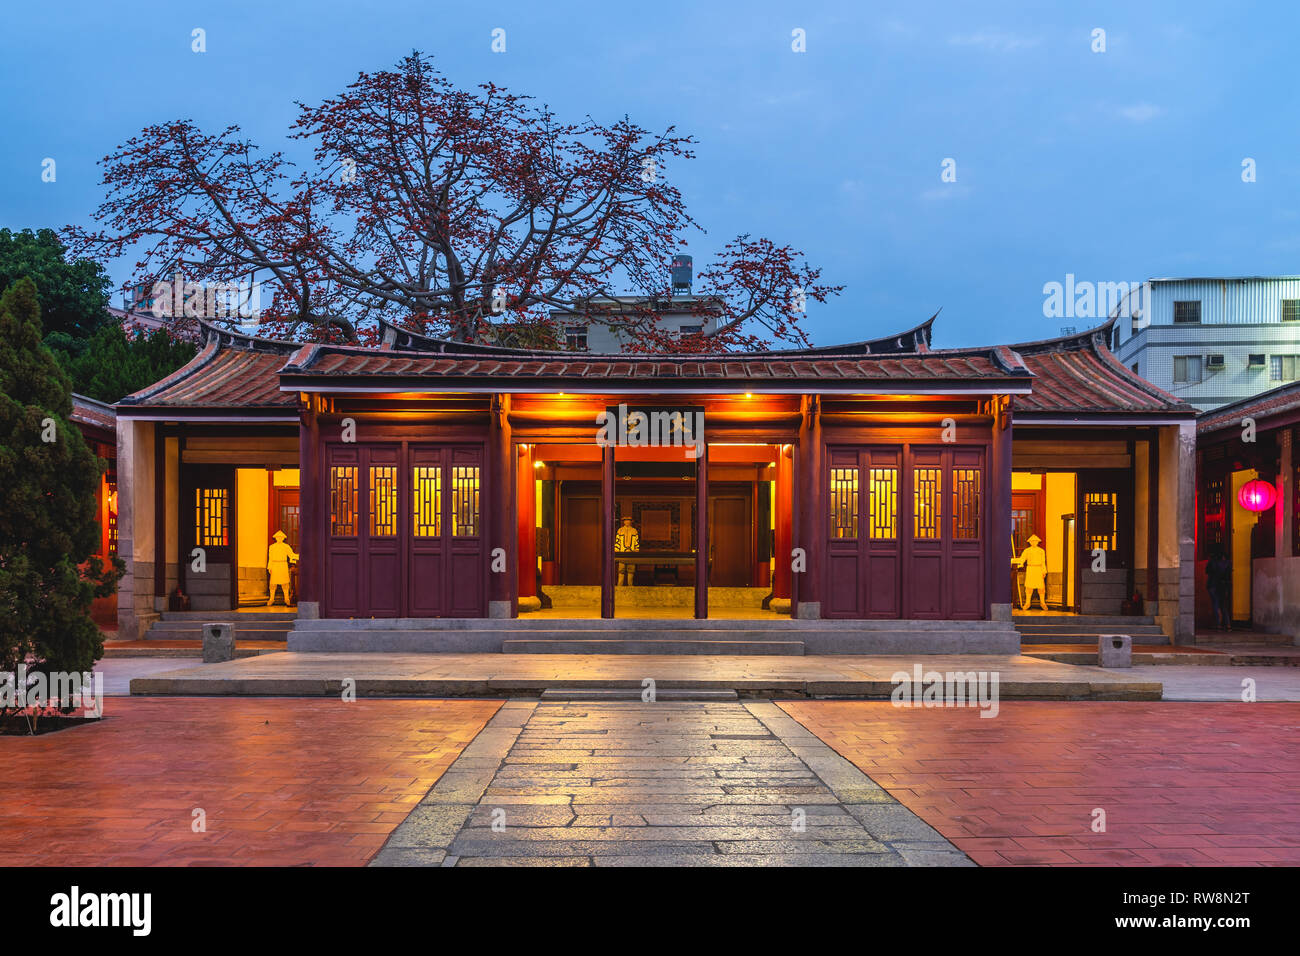 Kinmen militärisches Hauptquartier der Qing-dynastie. Die chinesischen Schriftzeichen bedeuten "Main Hall" Stockfoto